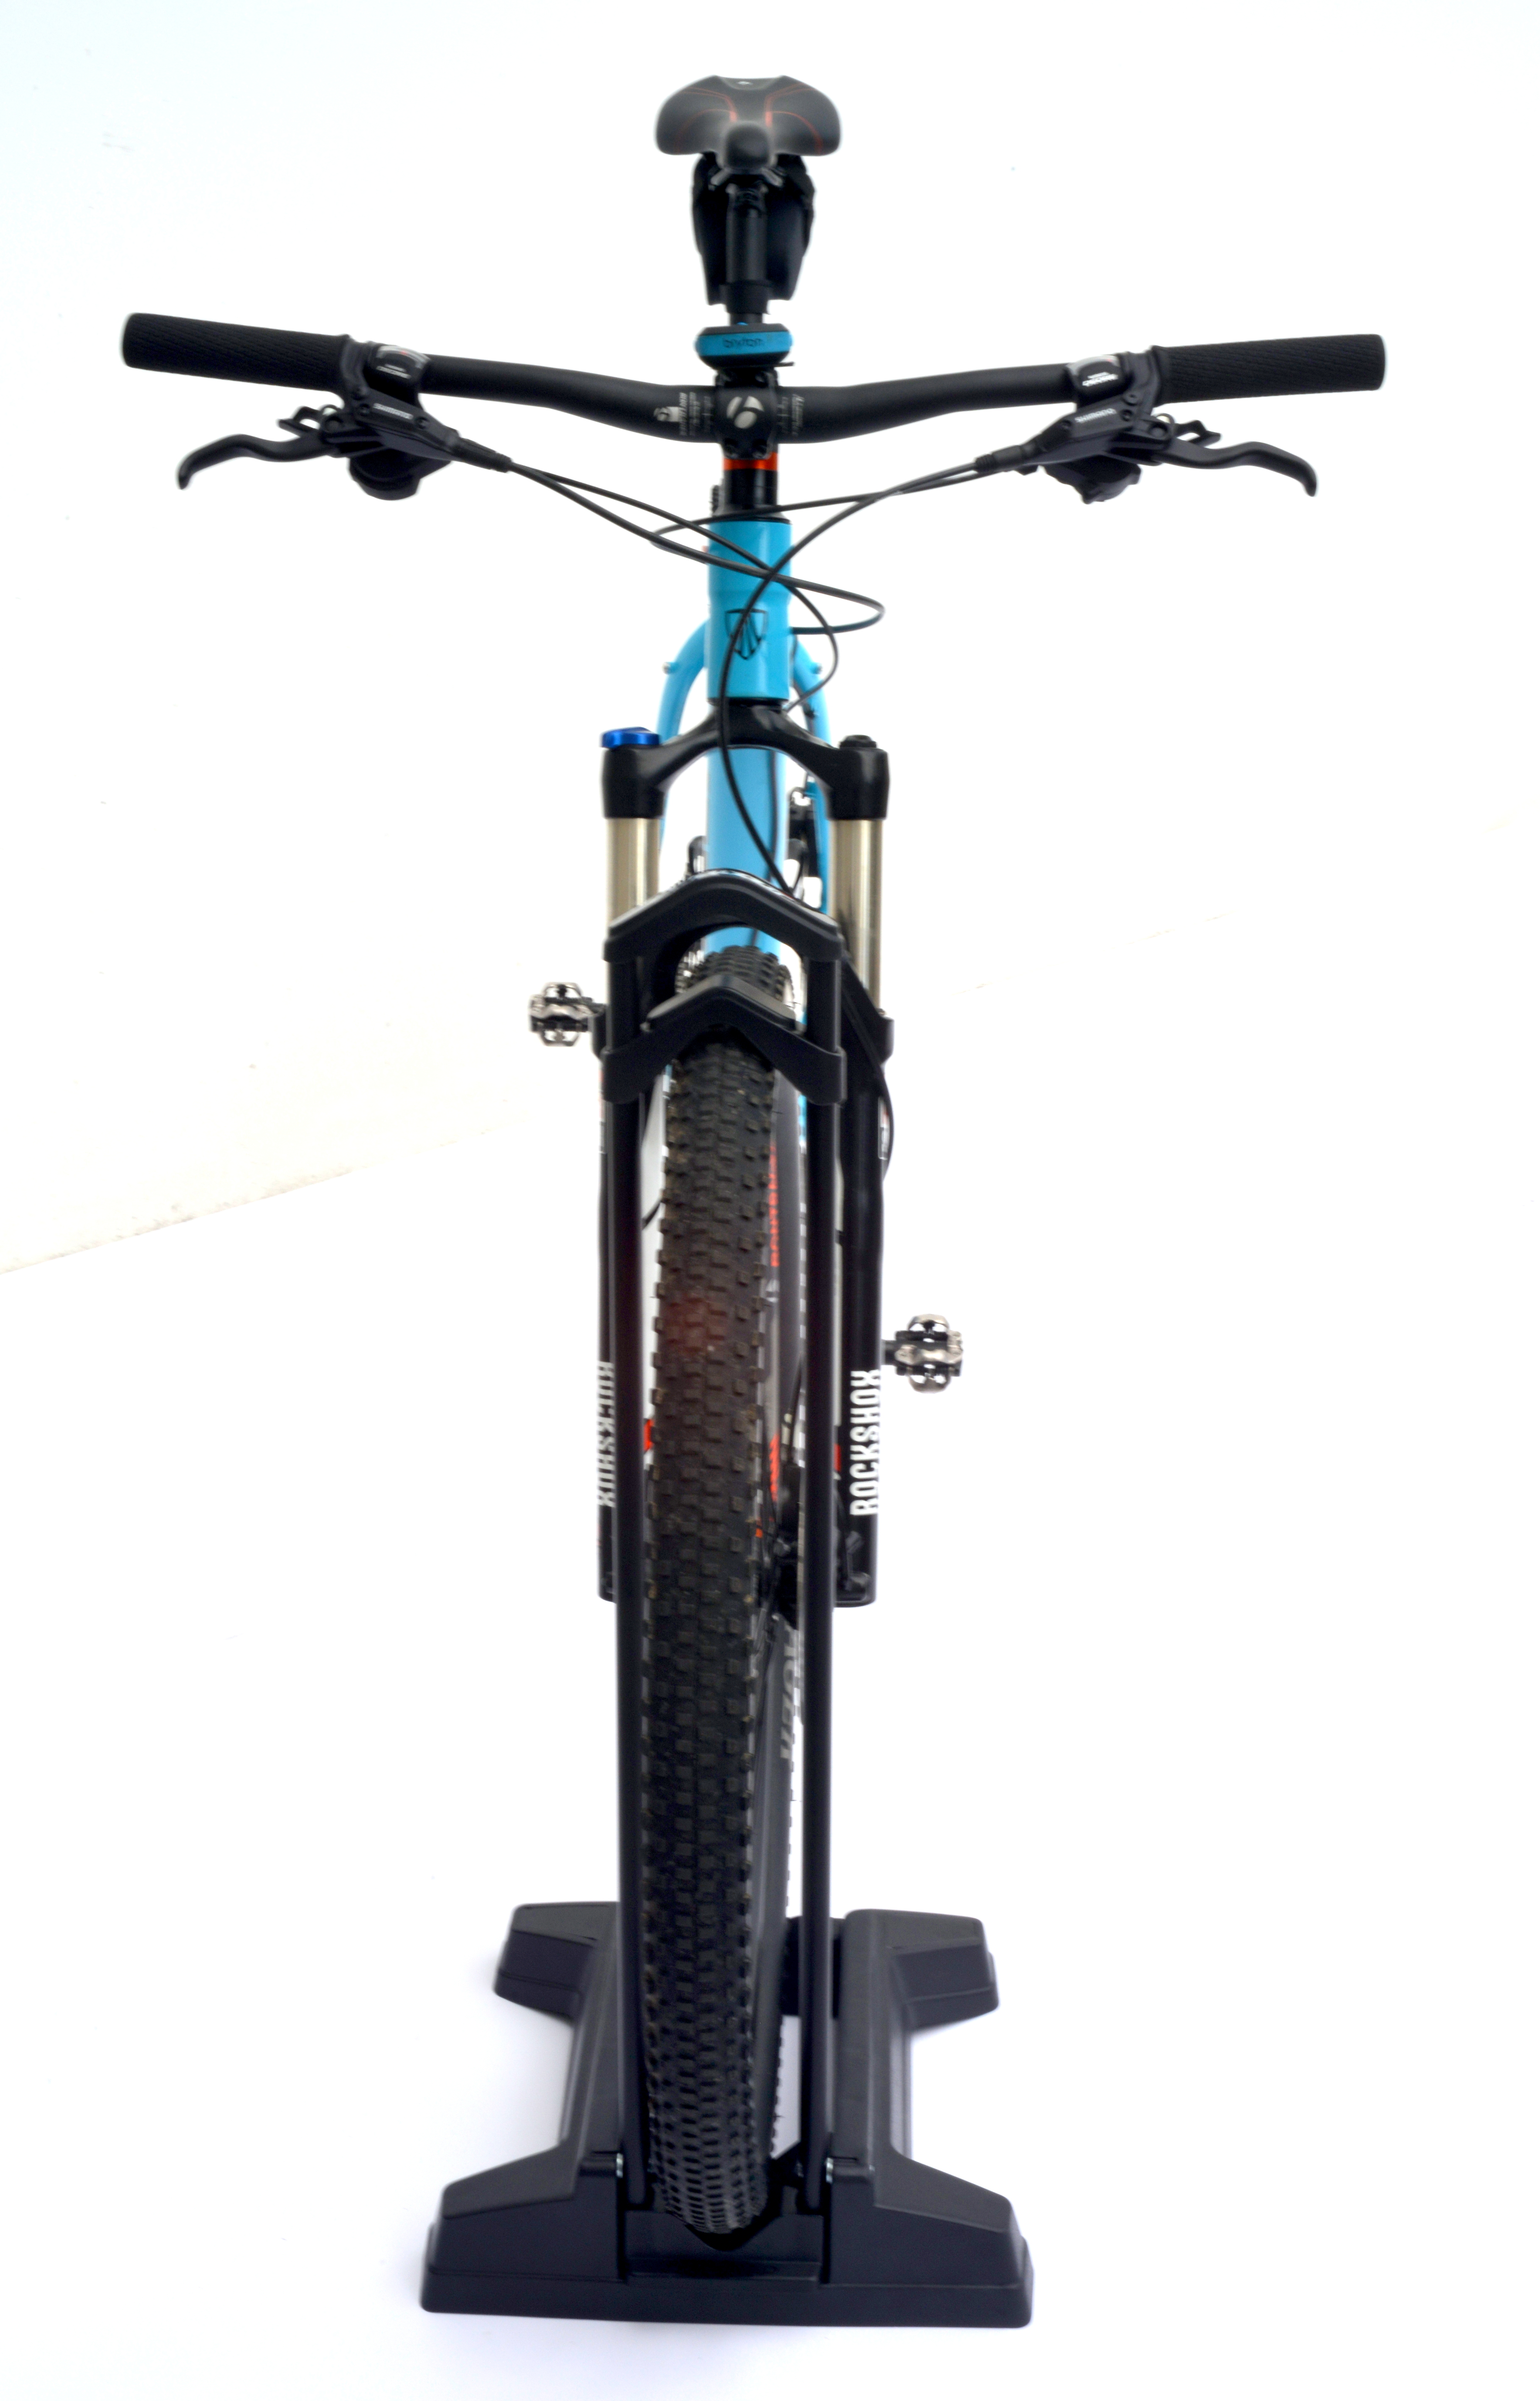 Accessoires vélo : équipement vélo route, VTT - CyberVelo